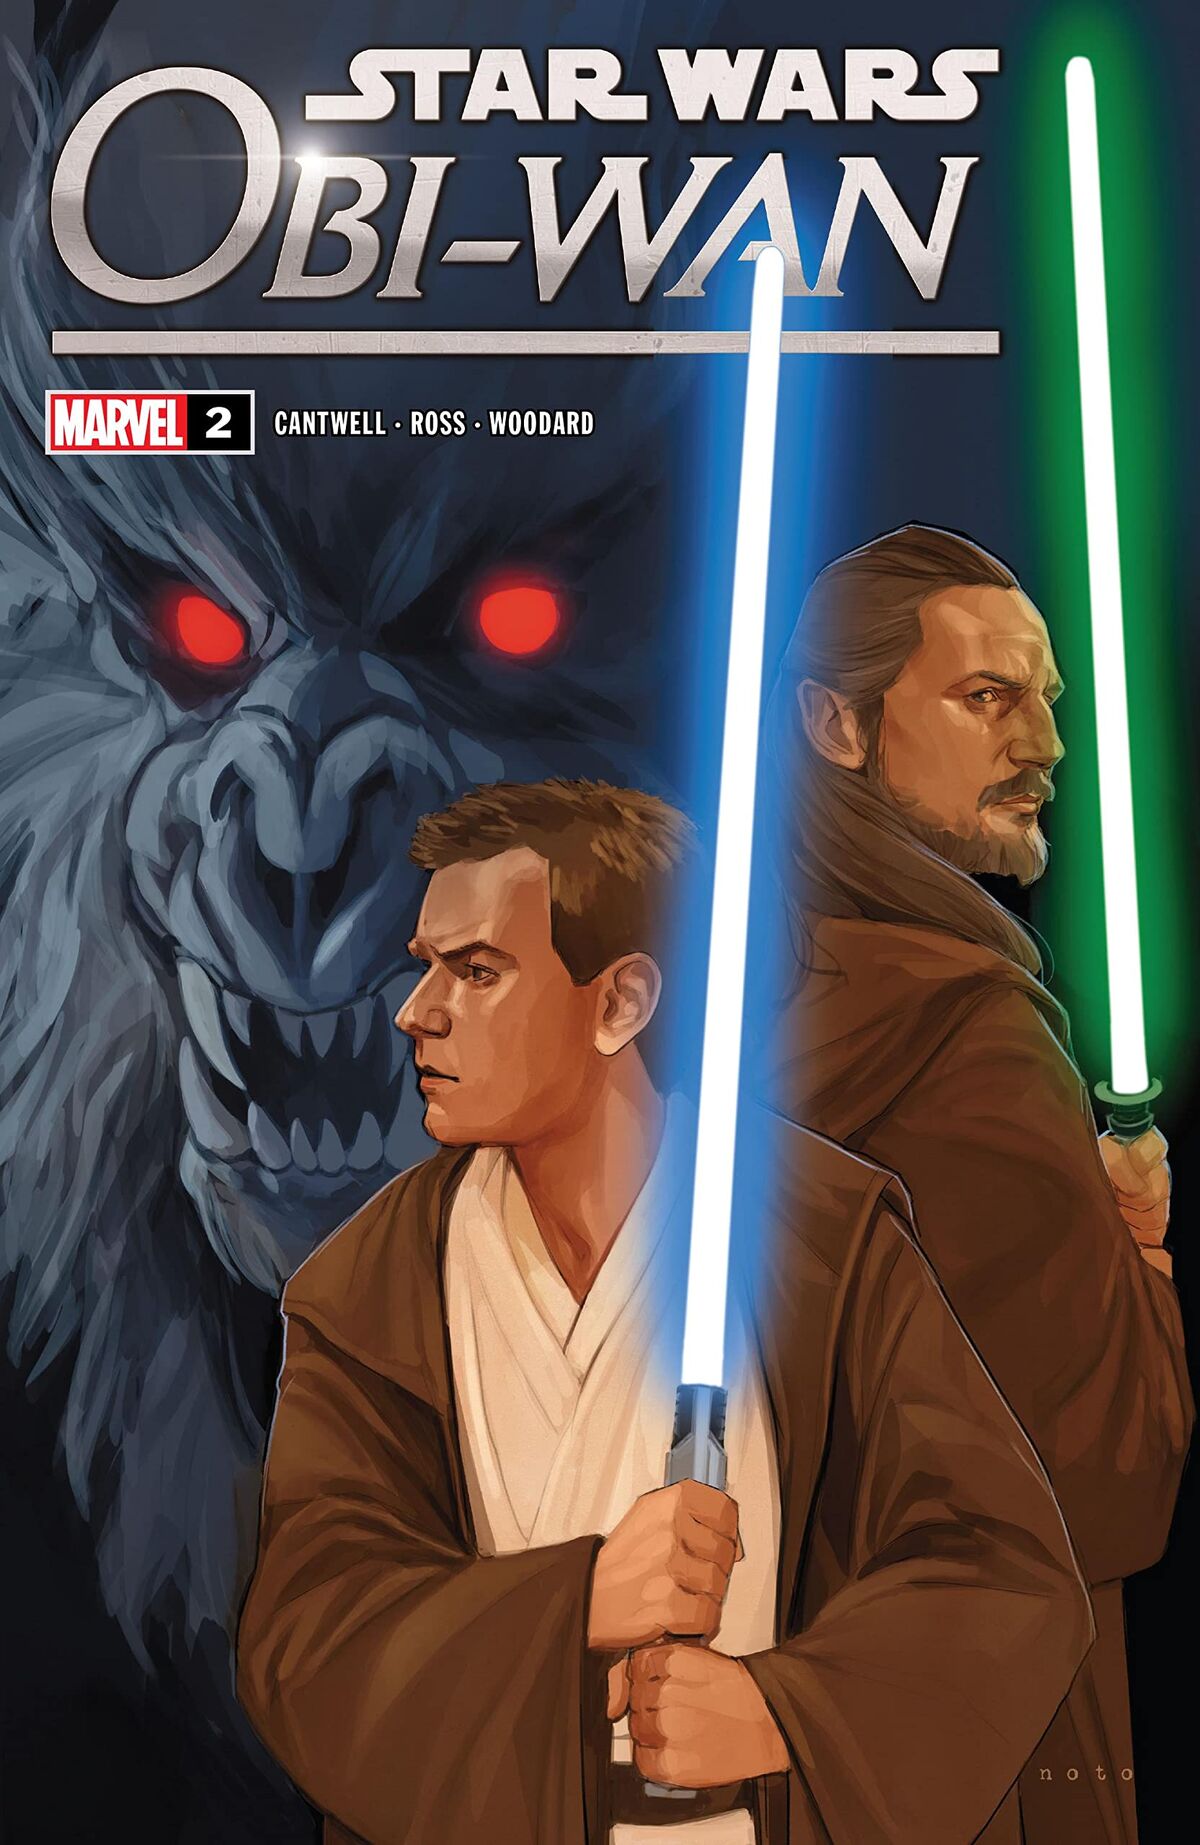 Qui-Gon Jinn/Obi-Wan Kenobi  Star wars poster, Star wars canon, Star wars  characters